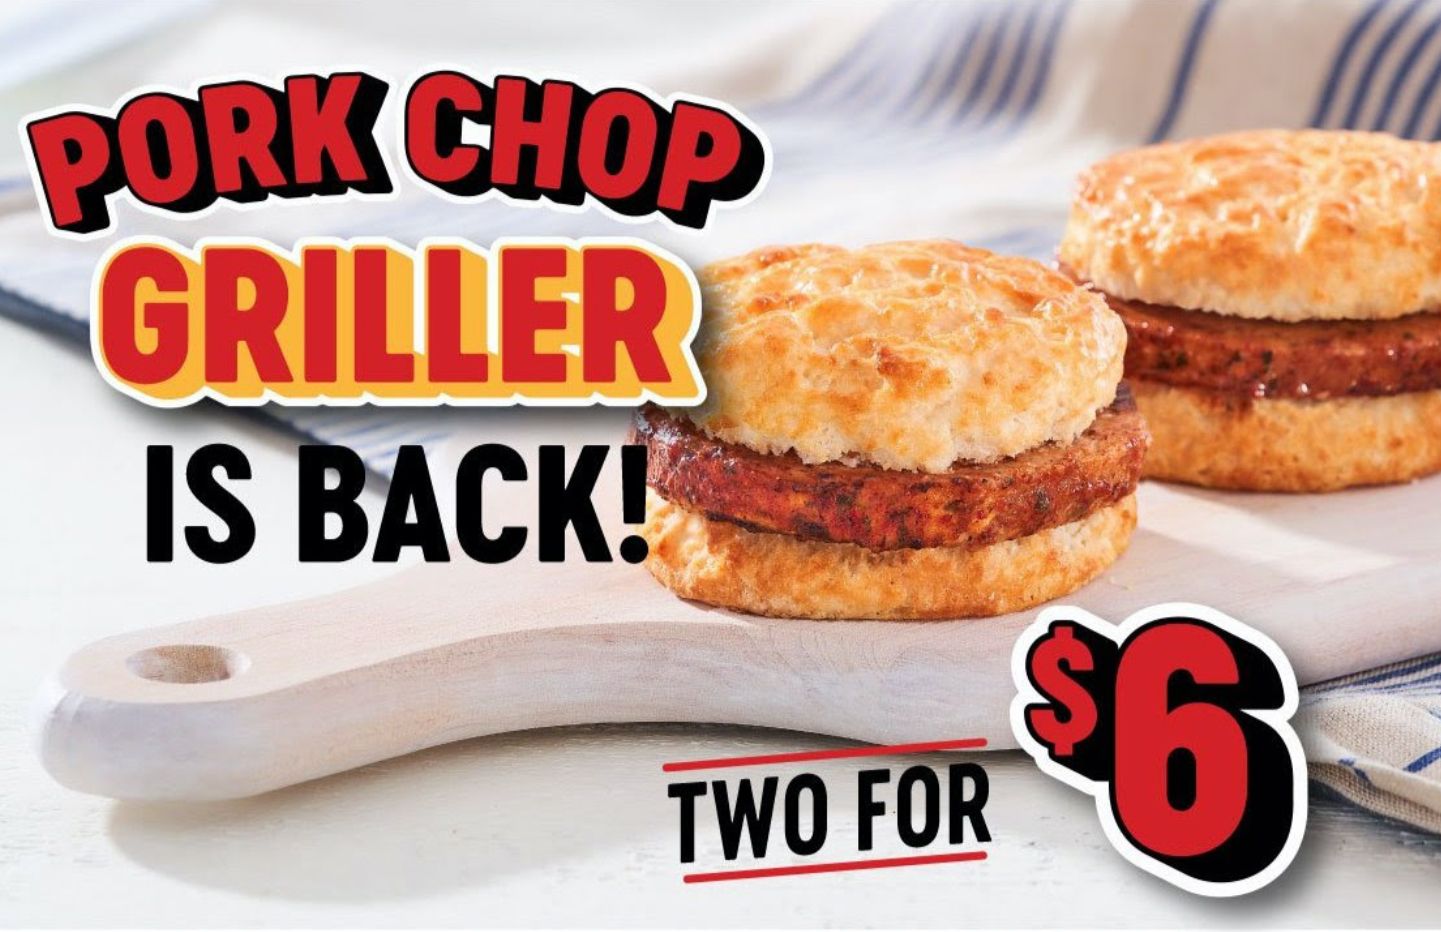 Popular 2 for $6 Pork Chop Griller Deal Returns to Bojangles 